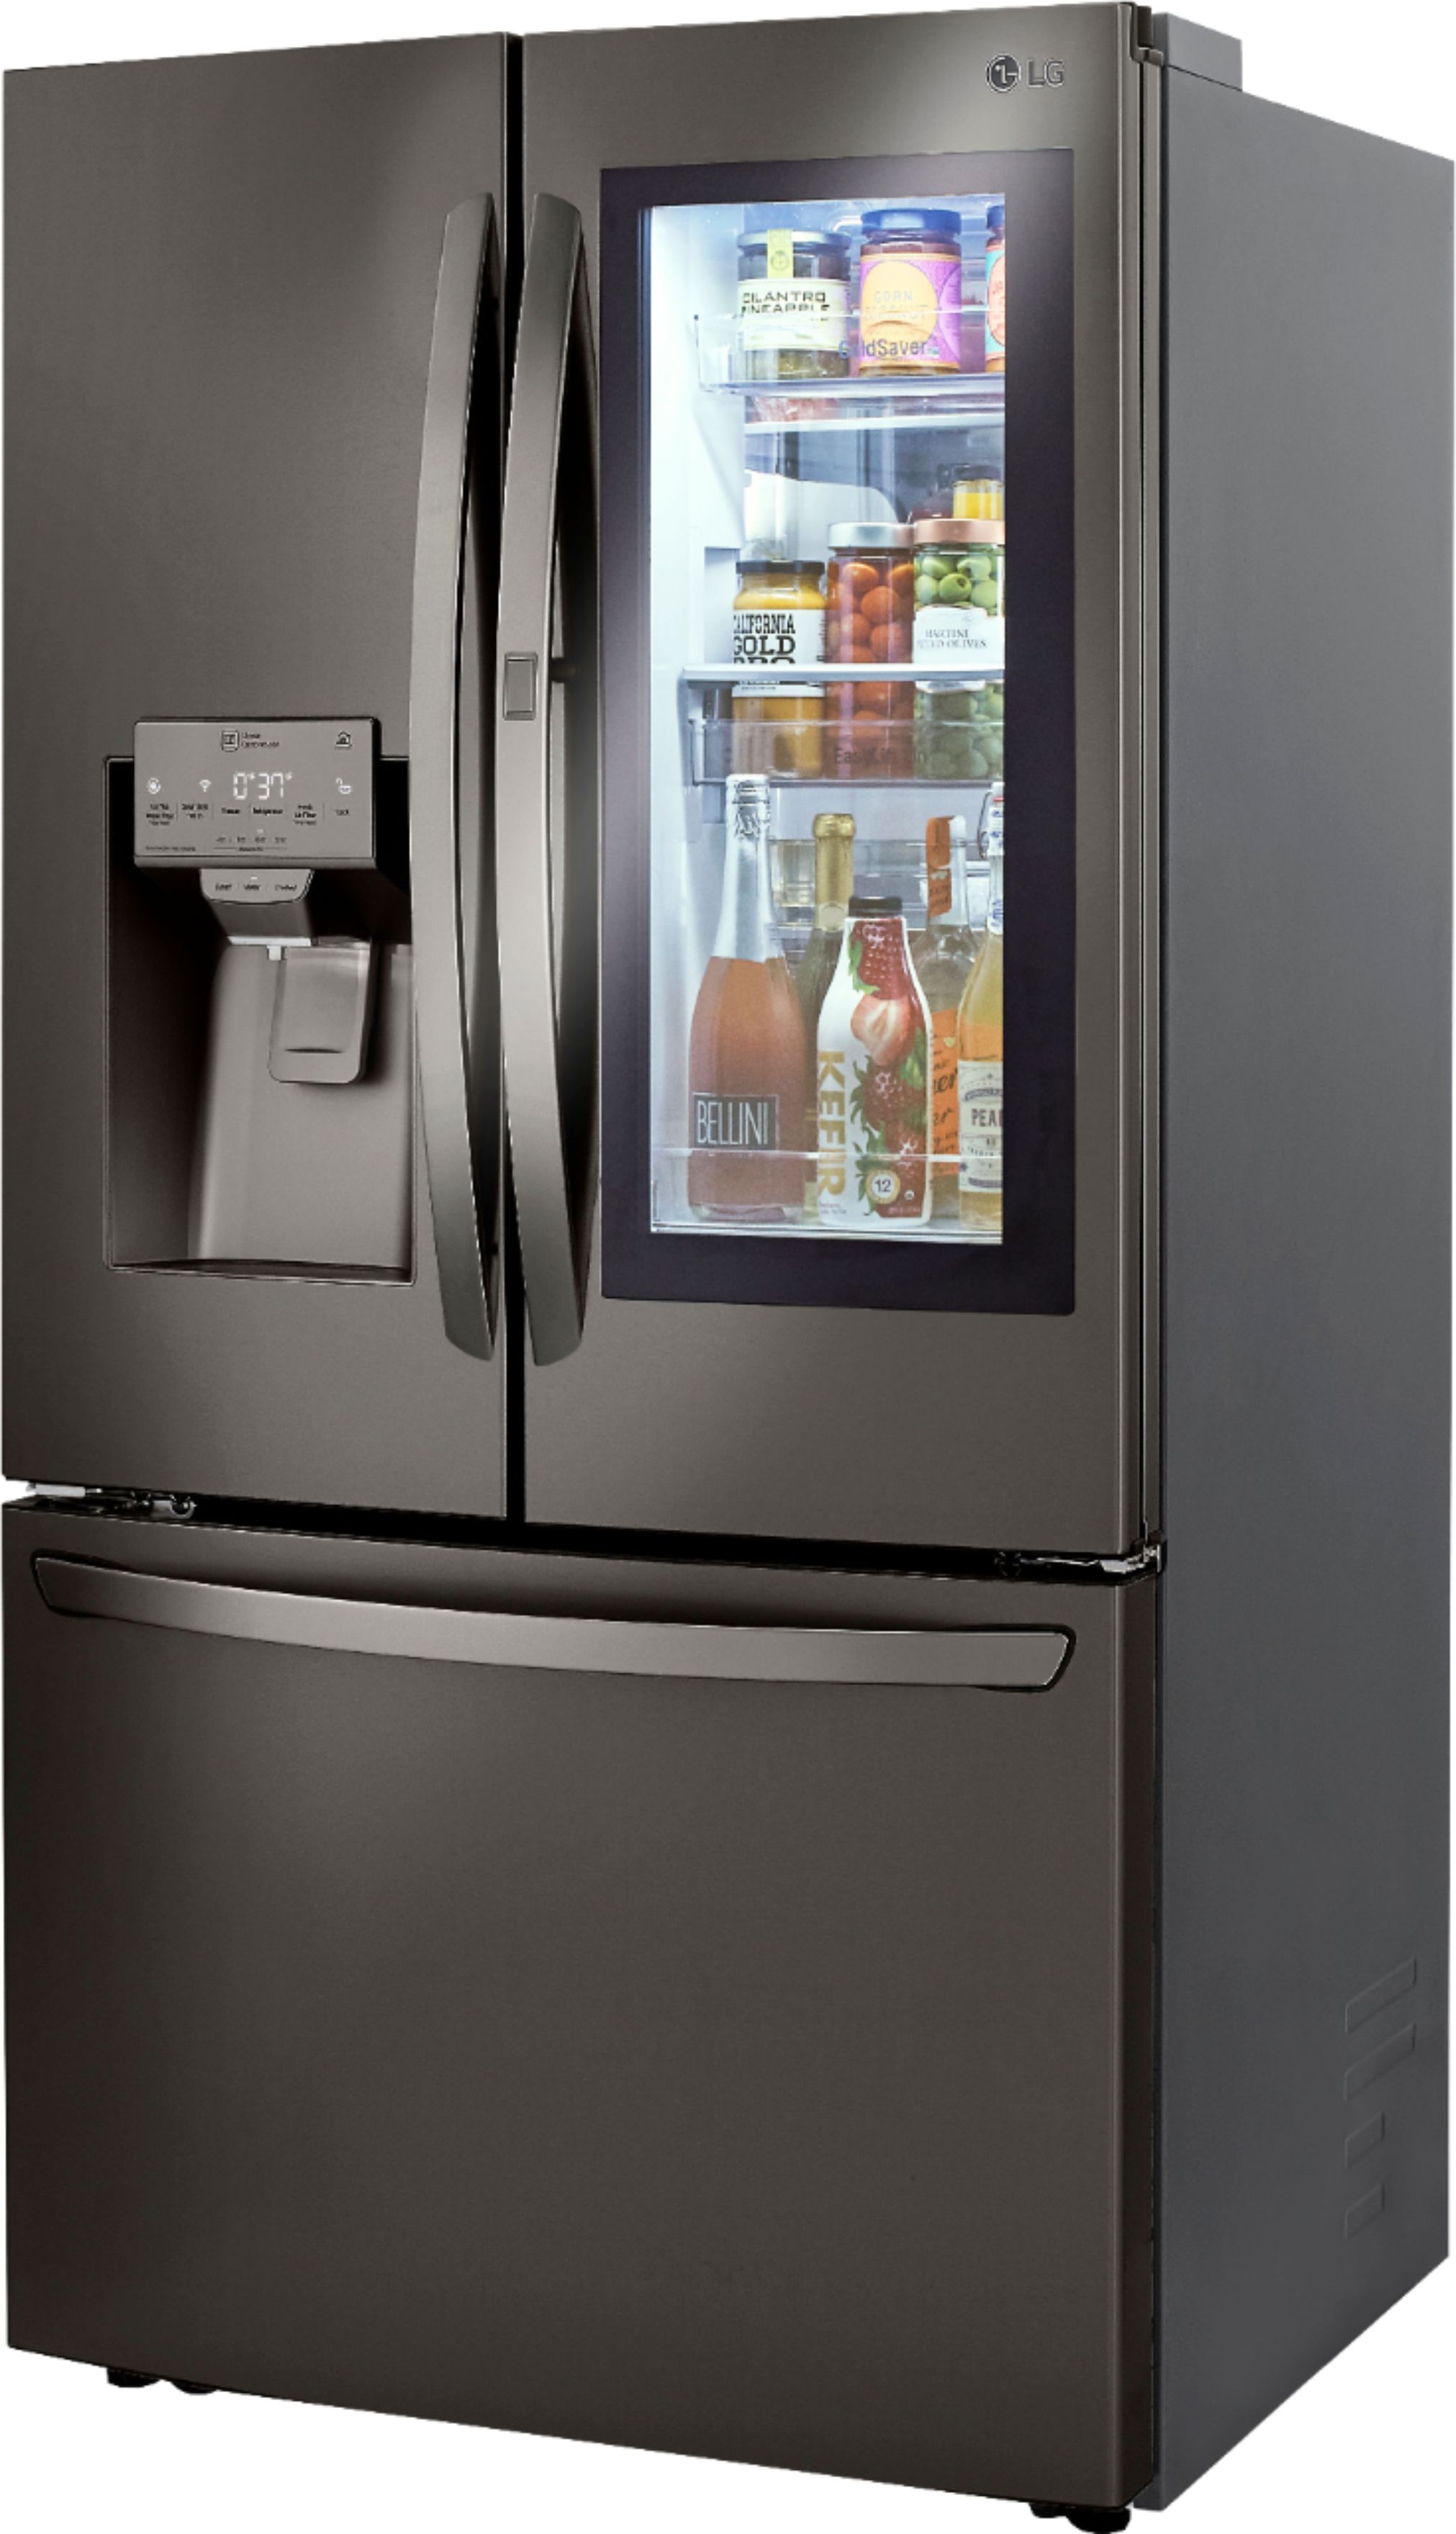 LG 23.5 Cu. Ft. French InstaView Door-in-Door Counter-Depth Lg Refrigerator Black Stainless Steel